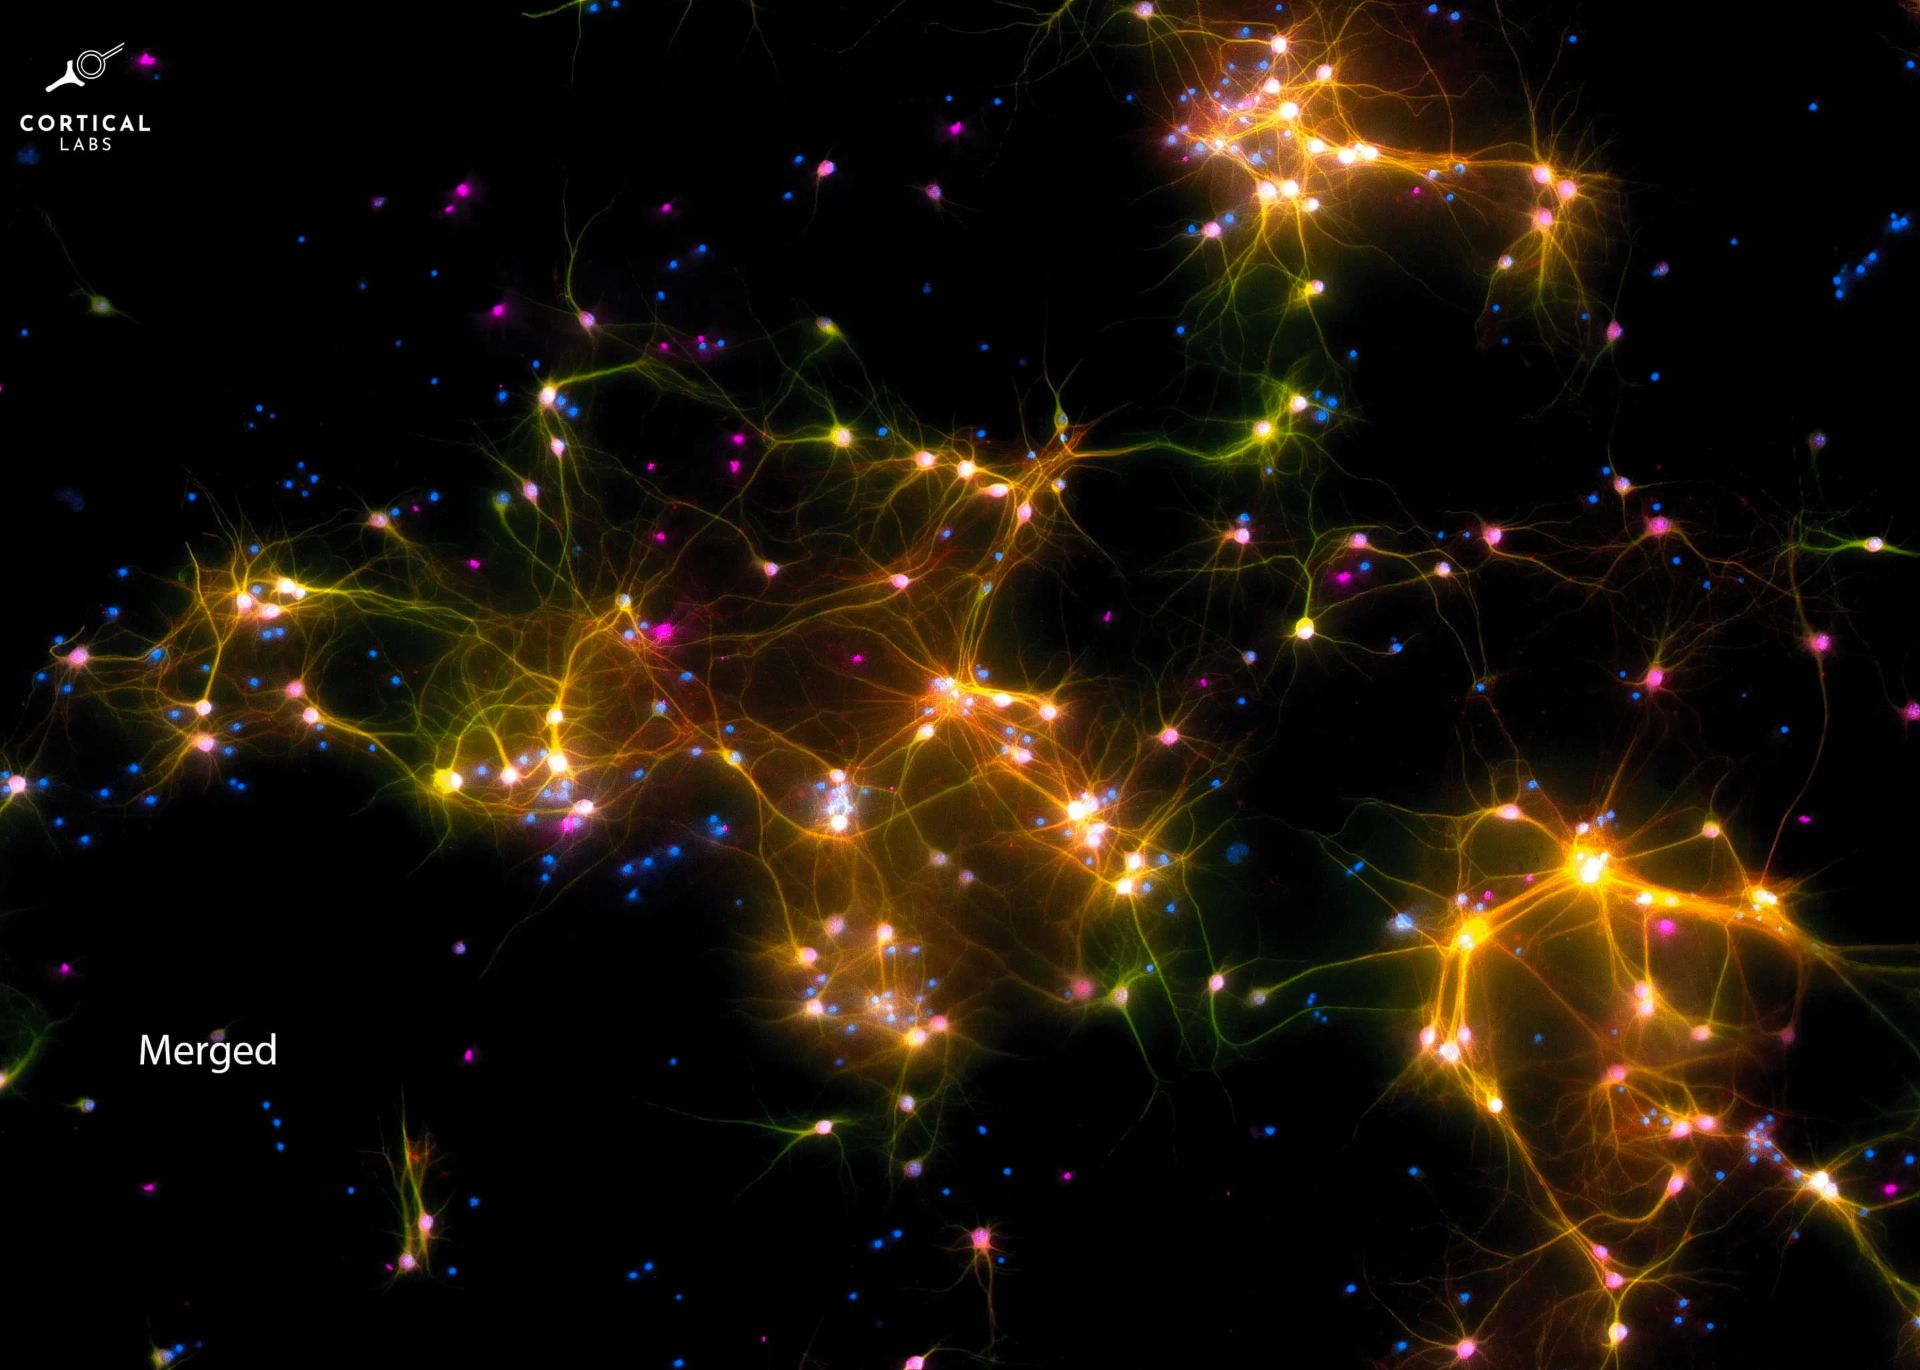 سلول های عصبی پردازنده DishBrain با رنگ روشن